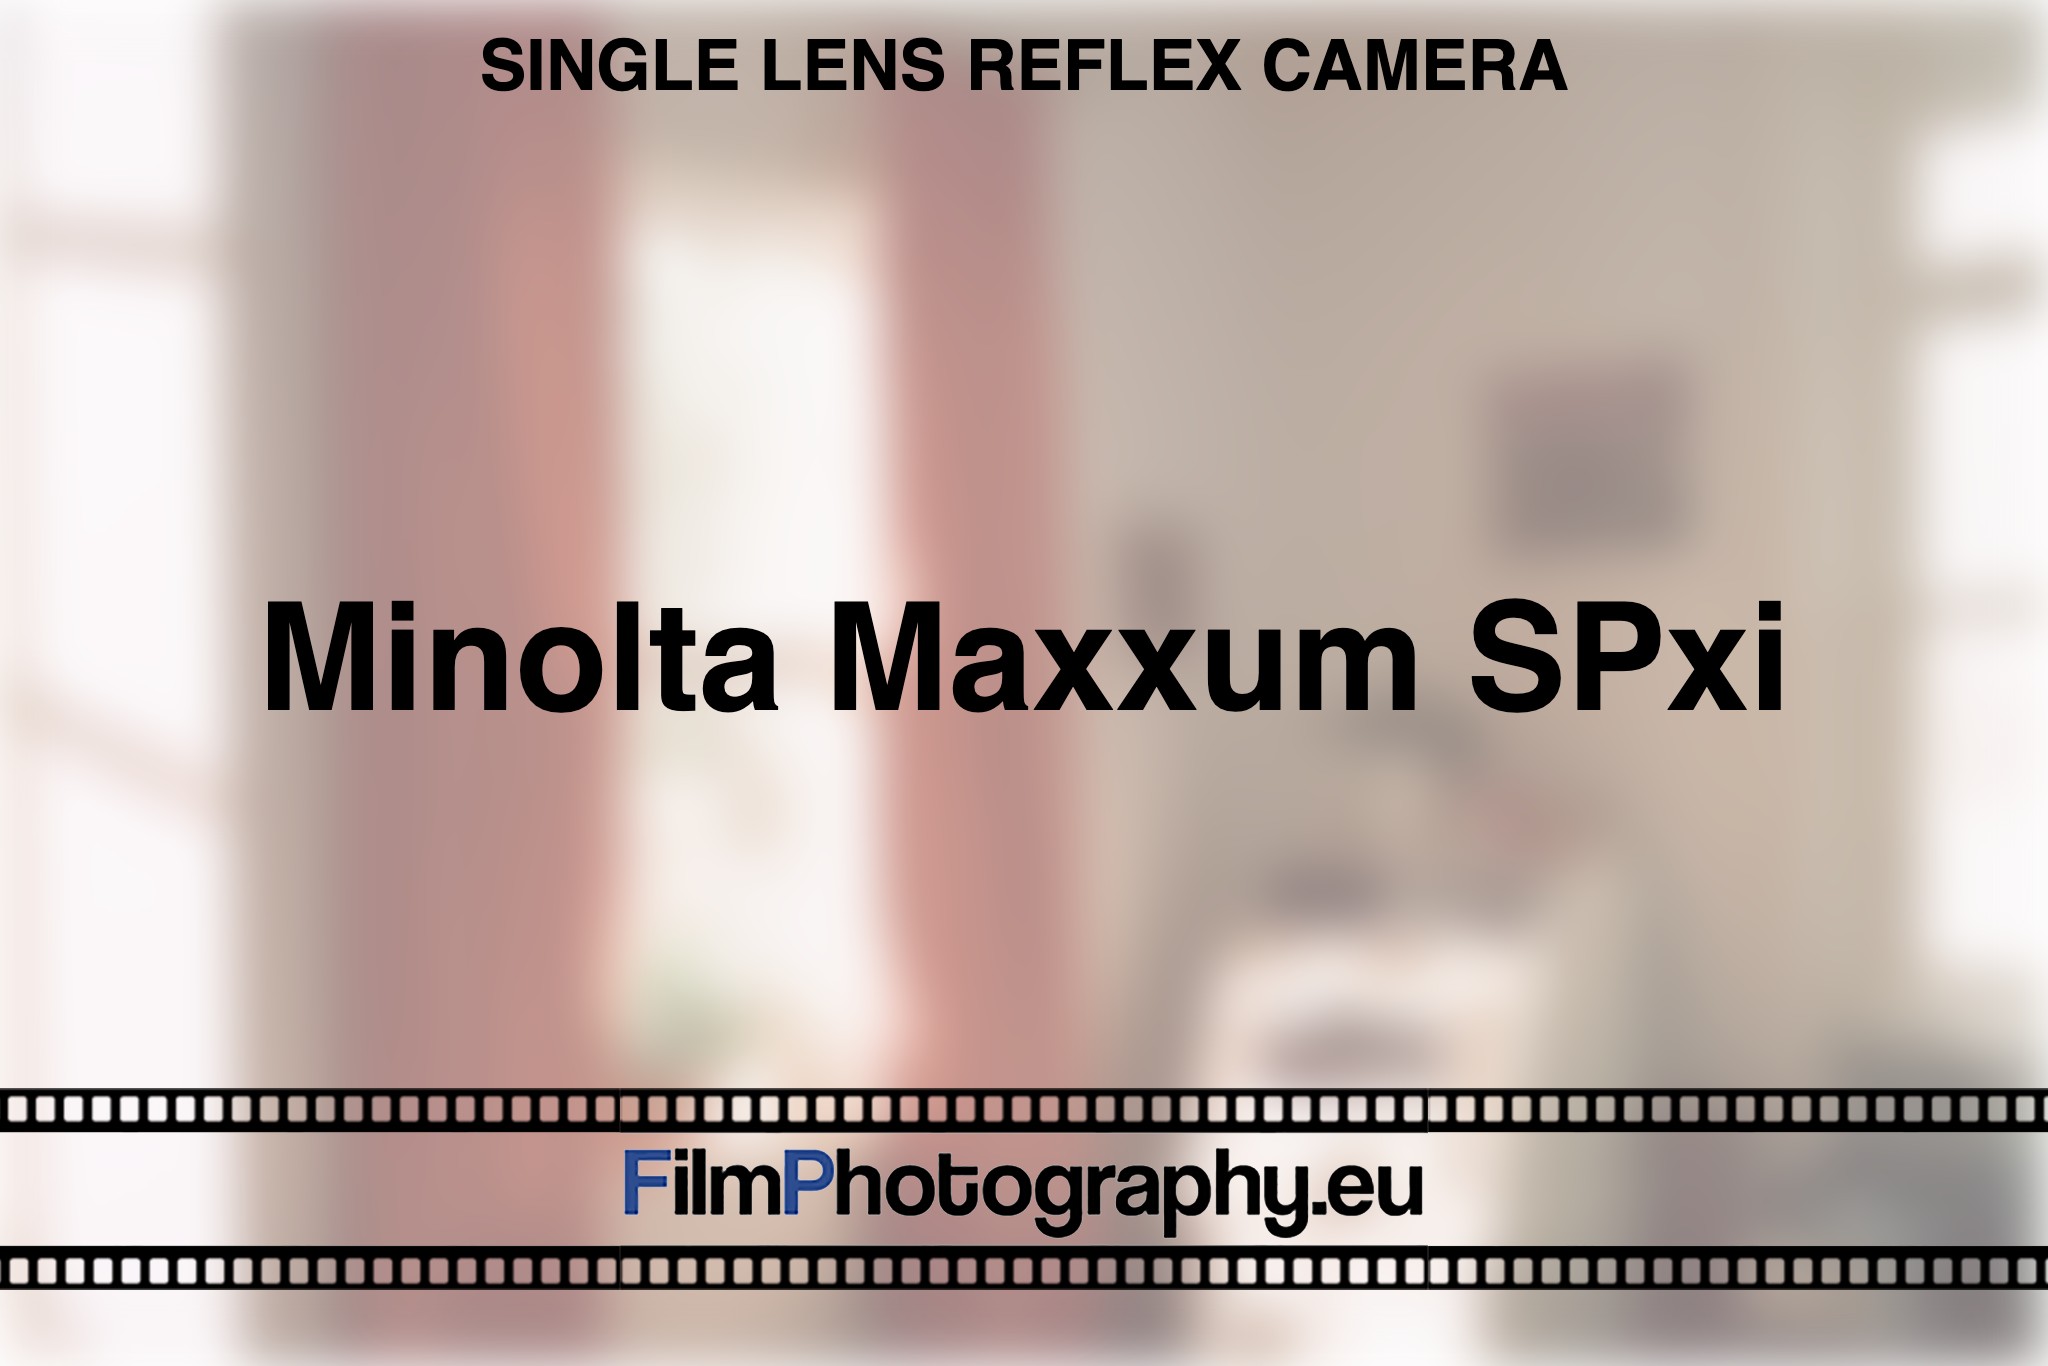 minolta-maxxum-spxi-single-lens-reflex-camera-bnv